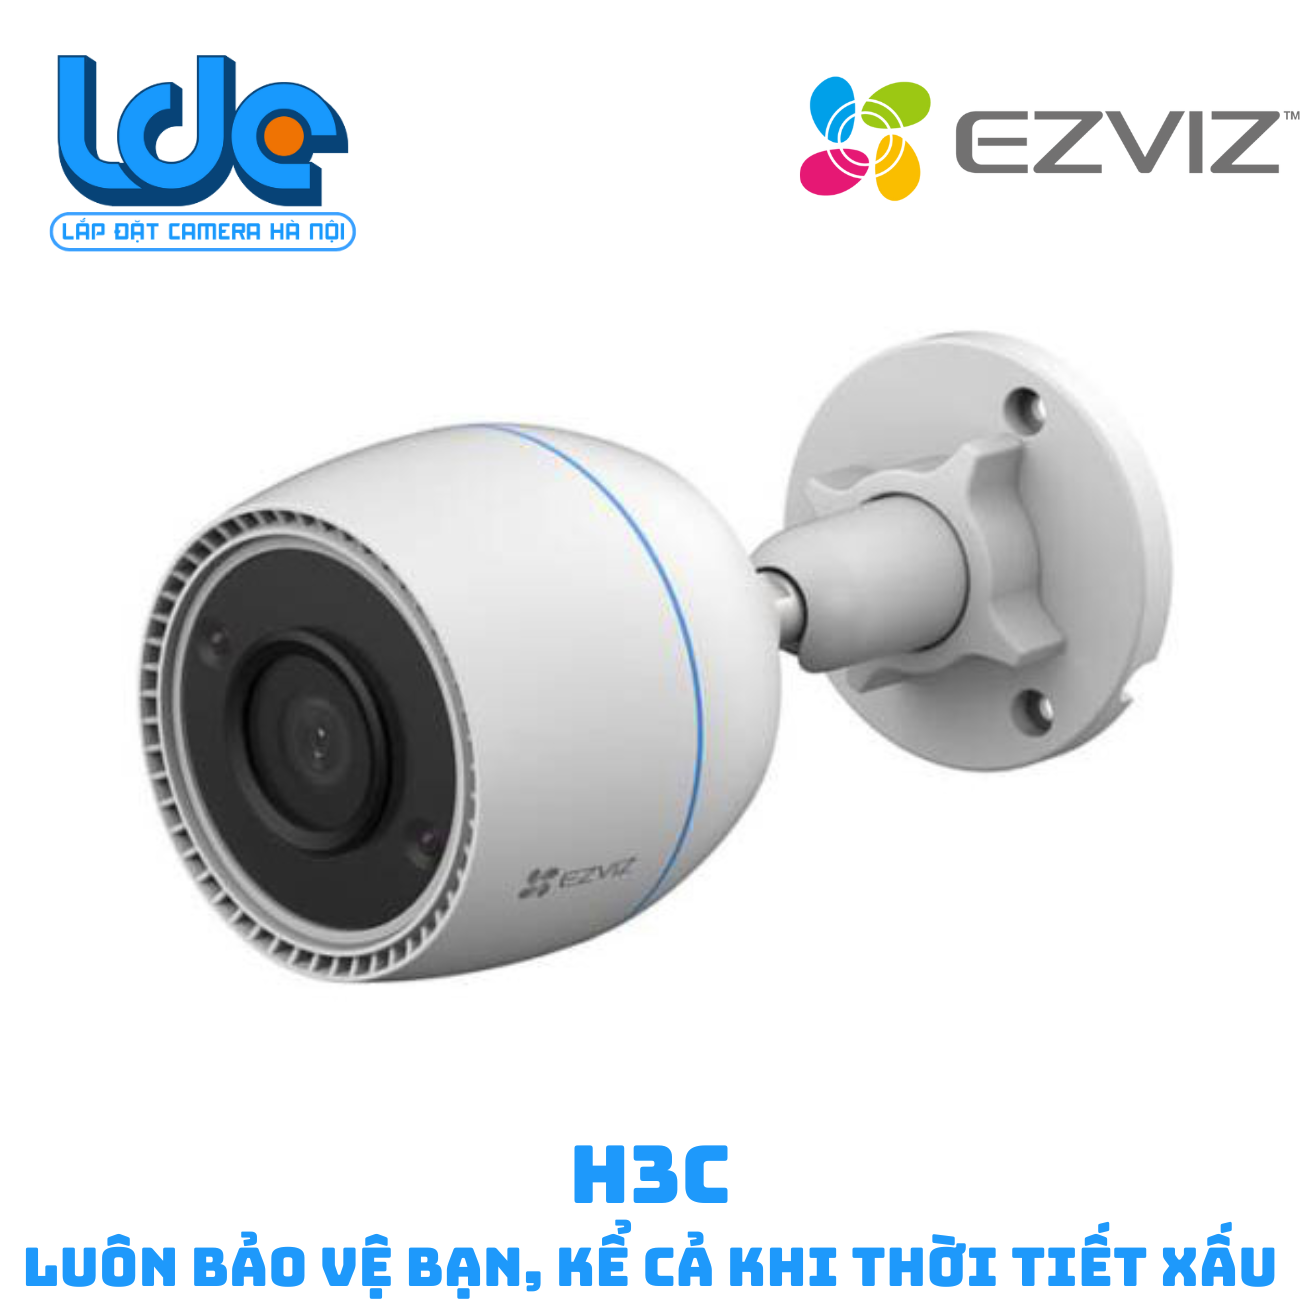 H3C COLOR Camera wifi Ezviz H3C lắp đặt ngoài trời